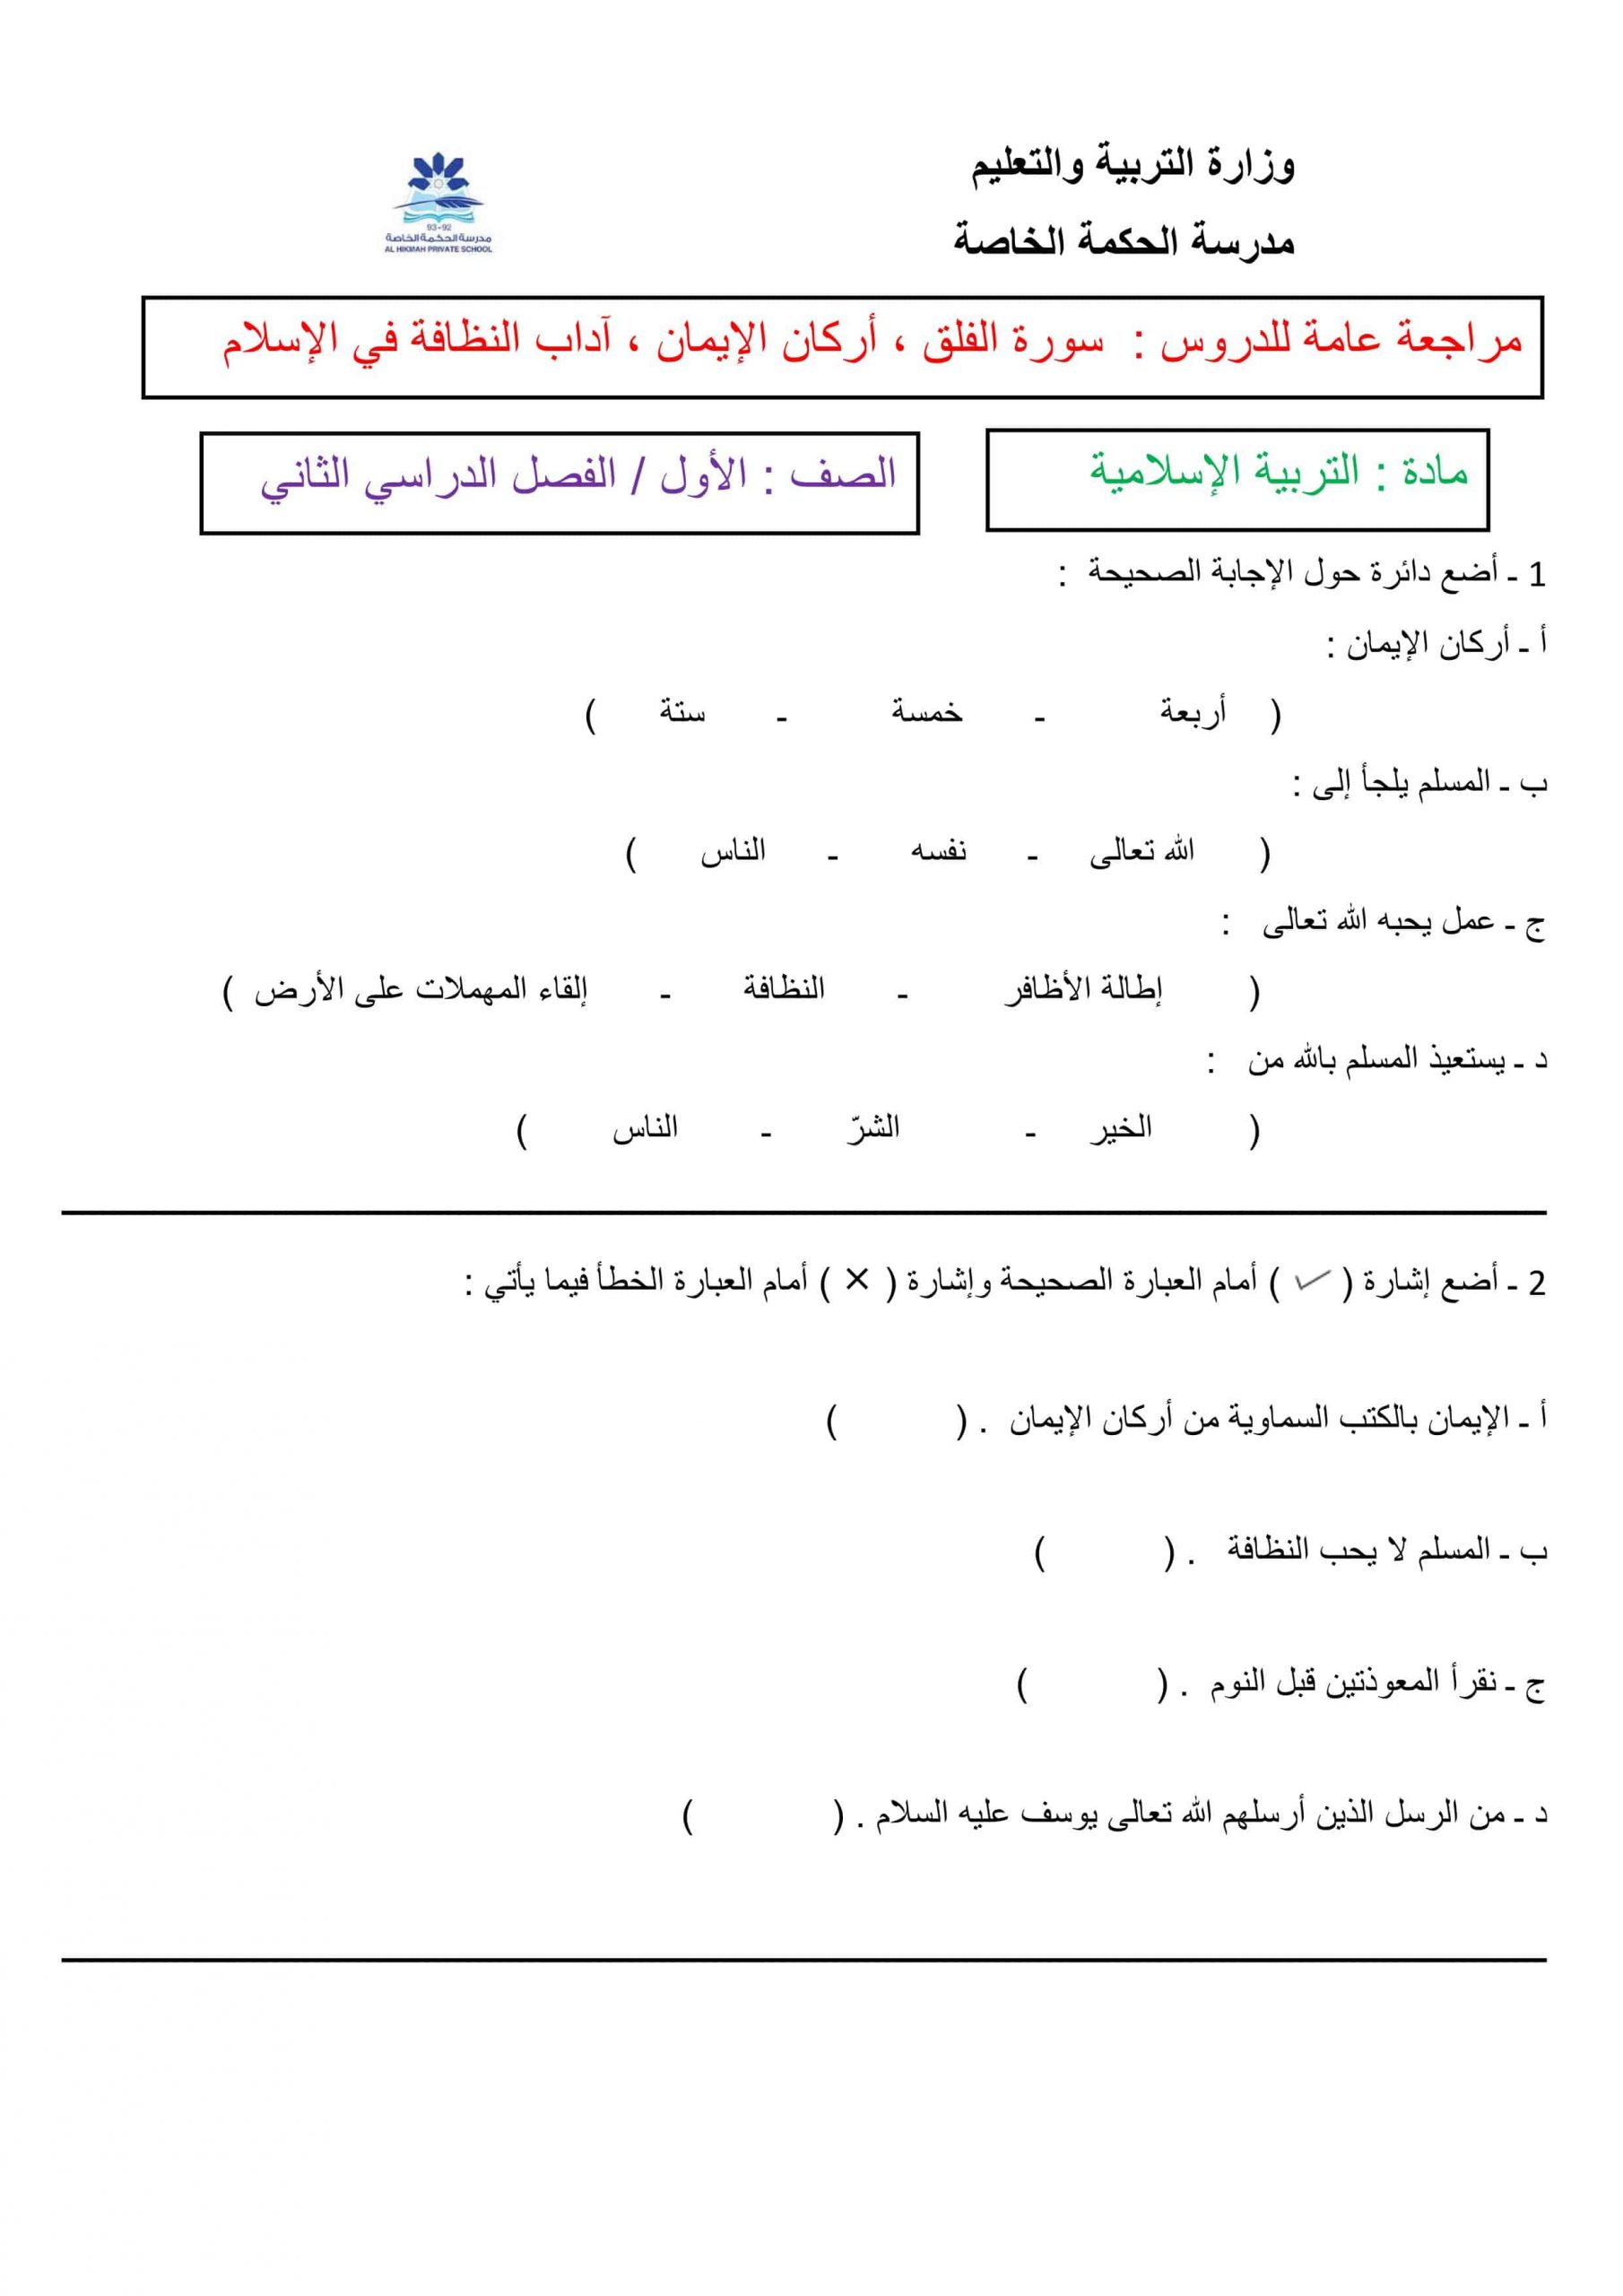 أوراق عمل ومراجعة عامة الصف الأول مادة التربية الإسلامية